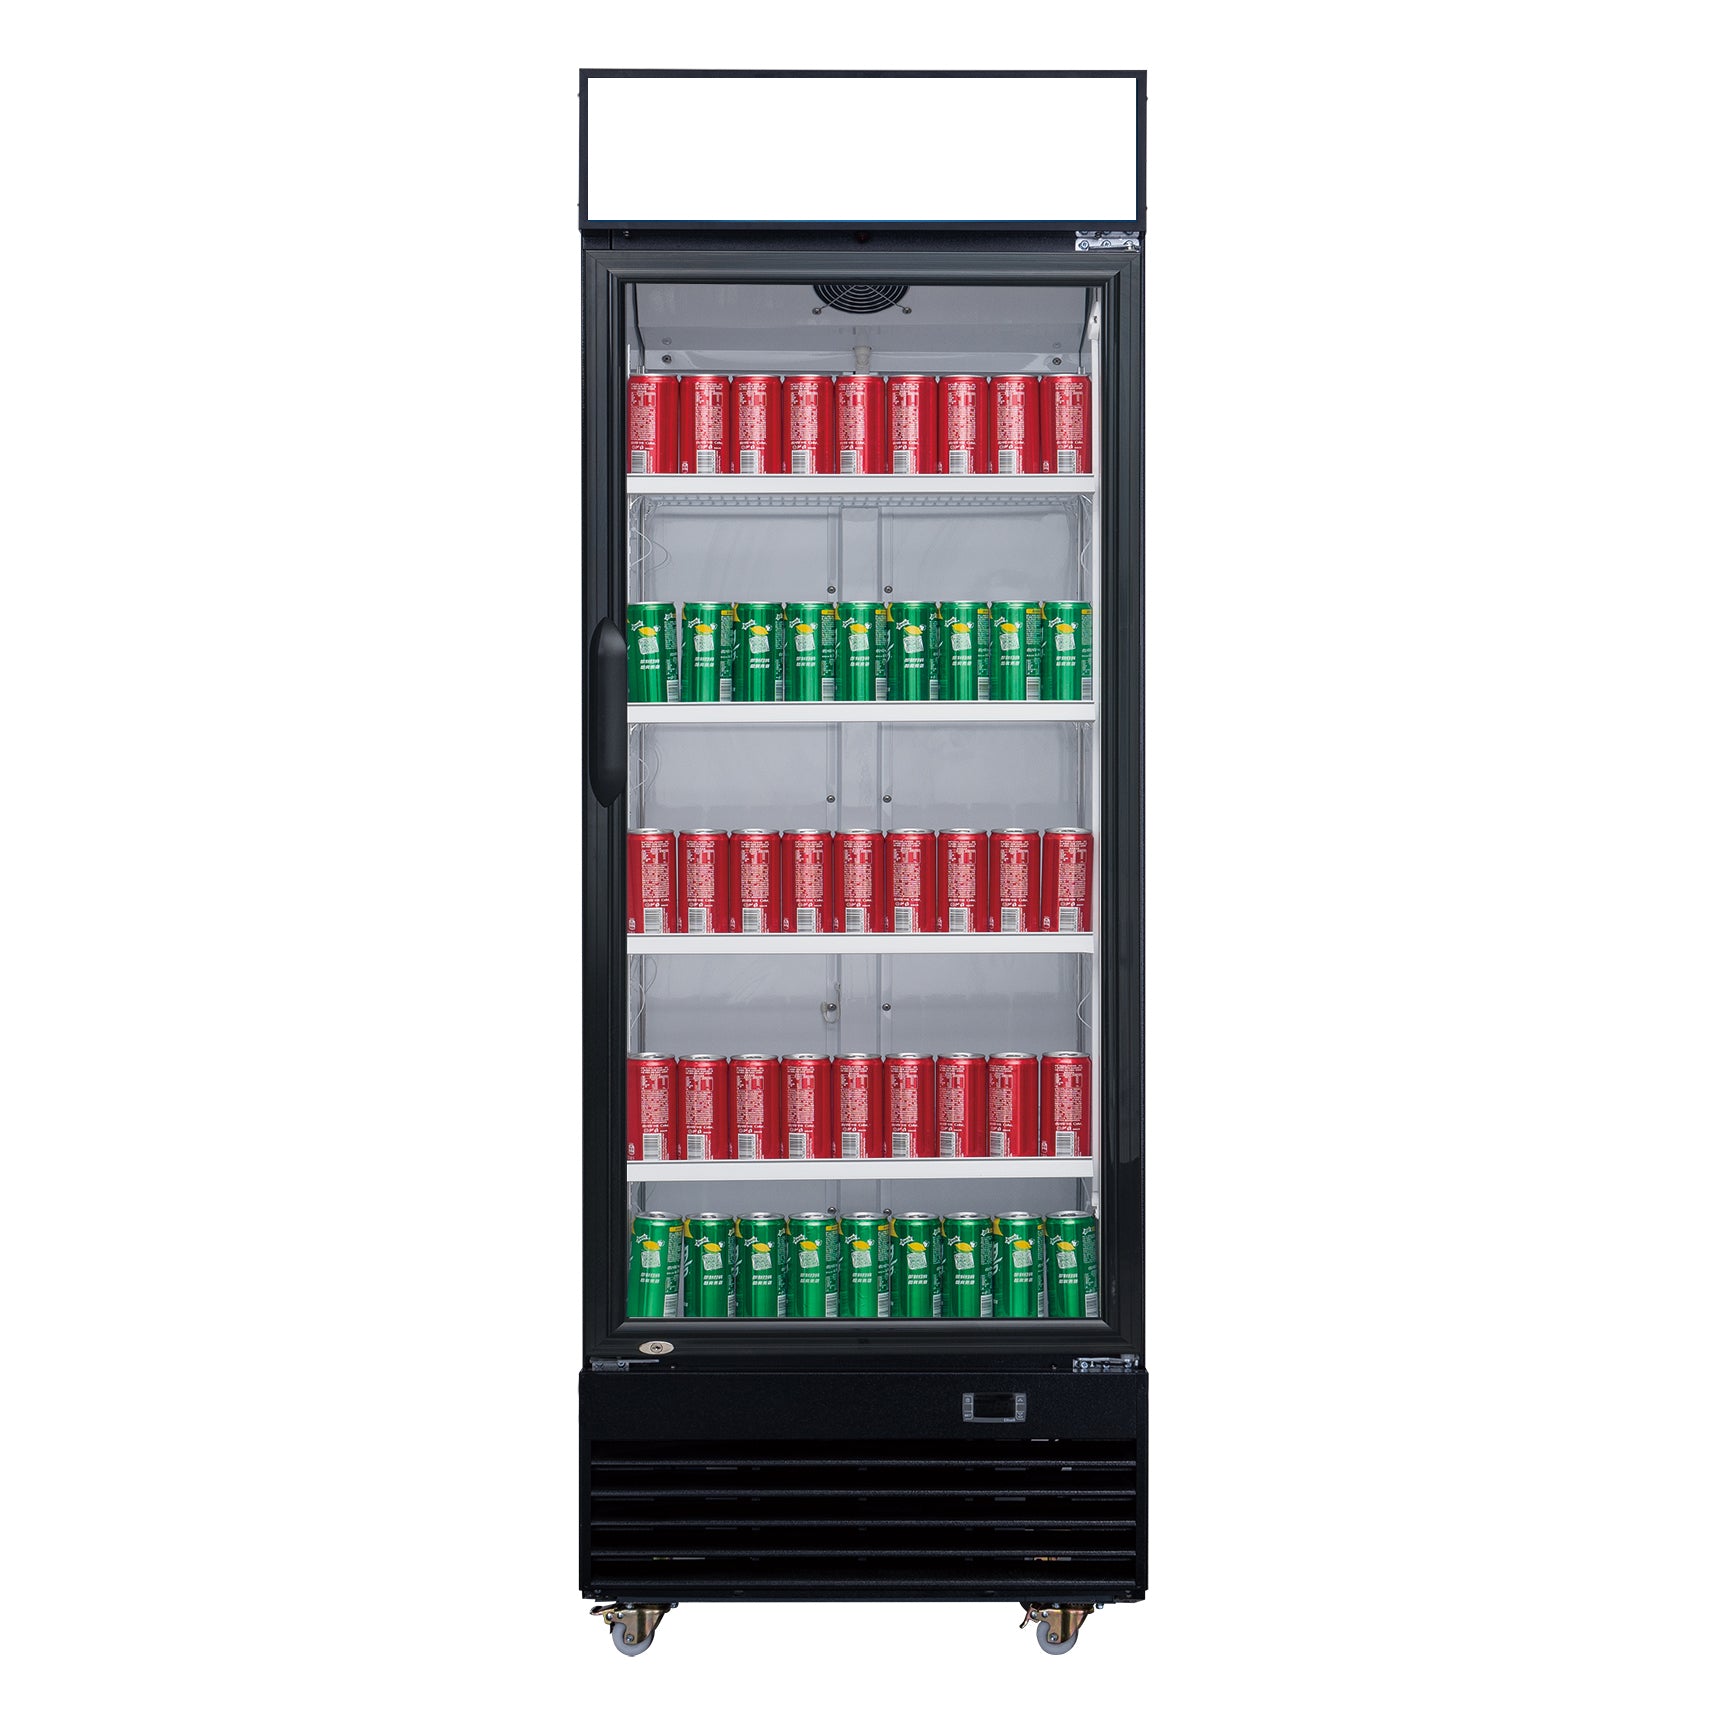 ChefAAA - TG-430 Commercial Single Swing Door Glass Merchandiser Refrigerator